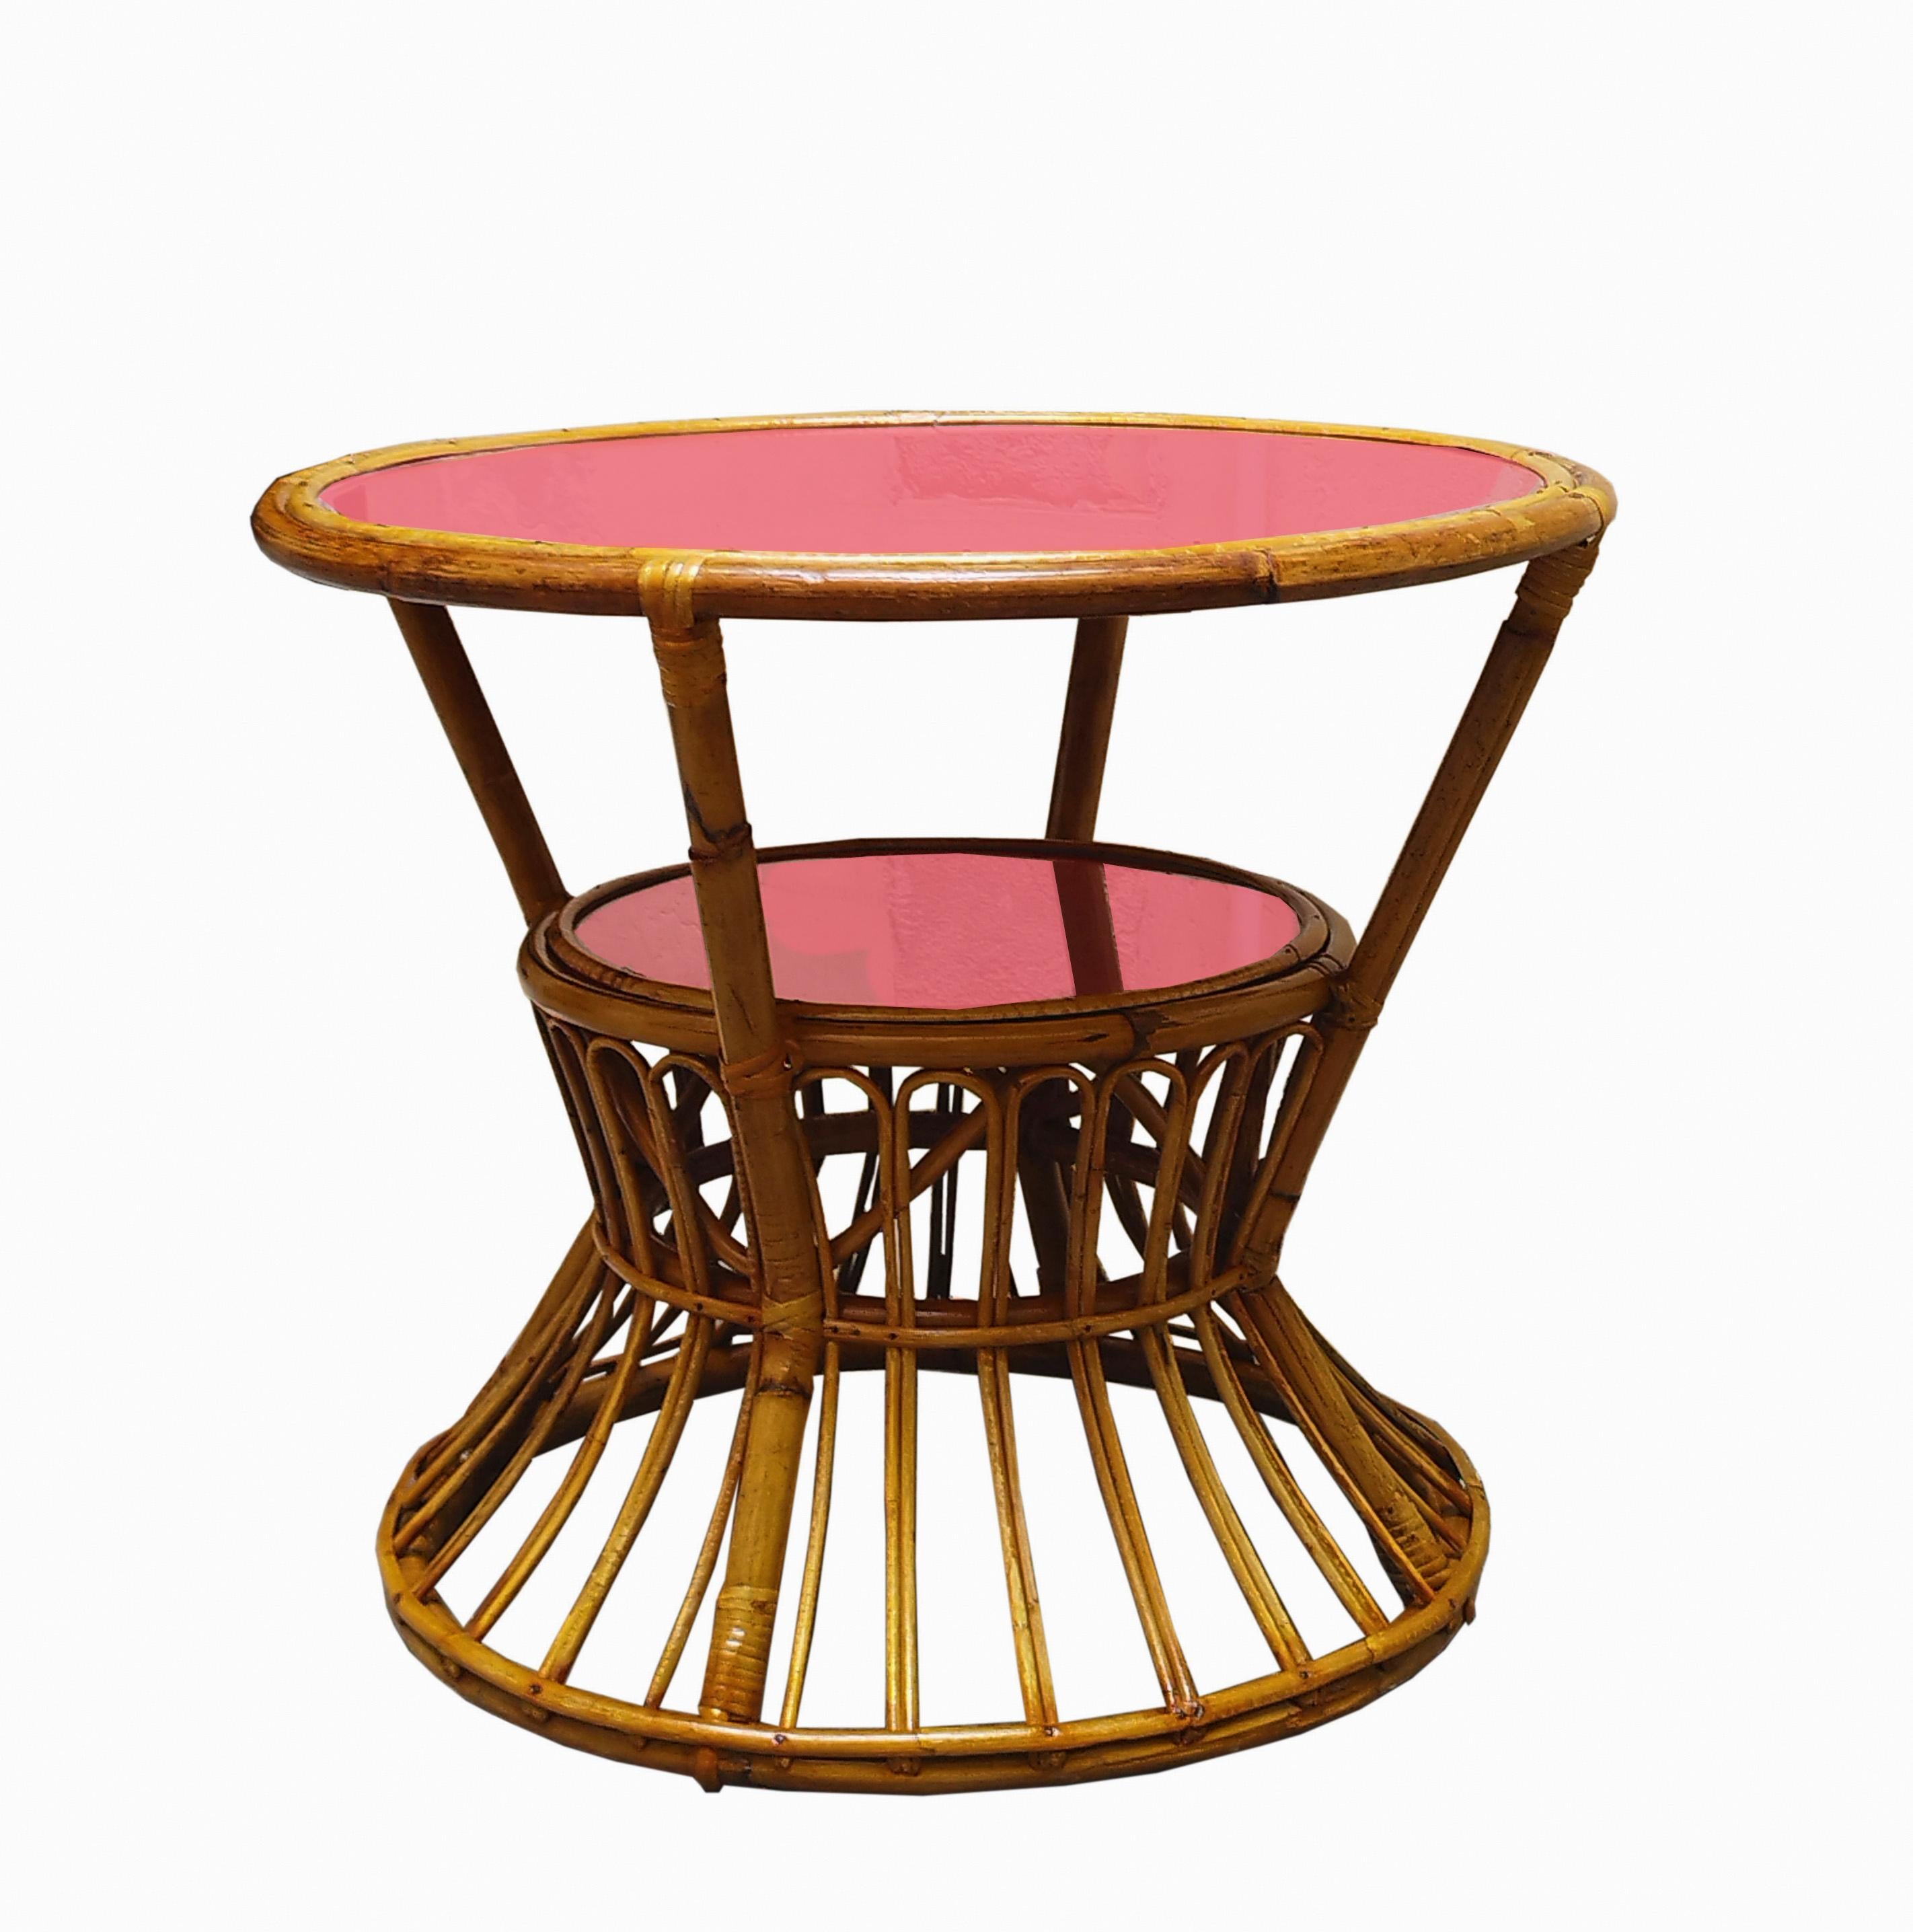 Table basse ronde en bambou avec plateau en verre rouge, conçue dans les années 1960 en Italie par Tito Agnoli.